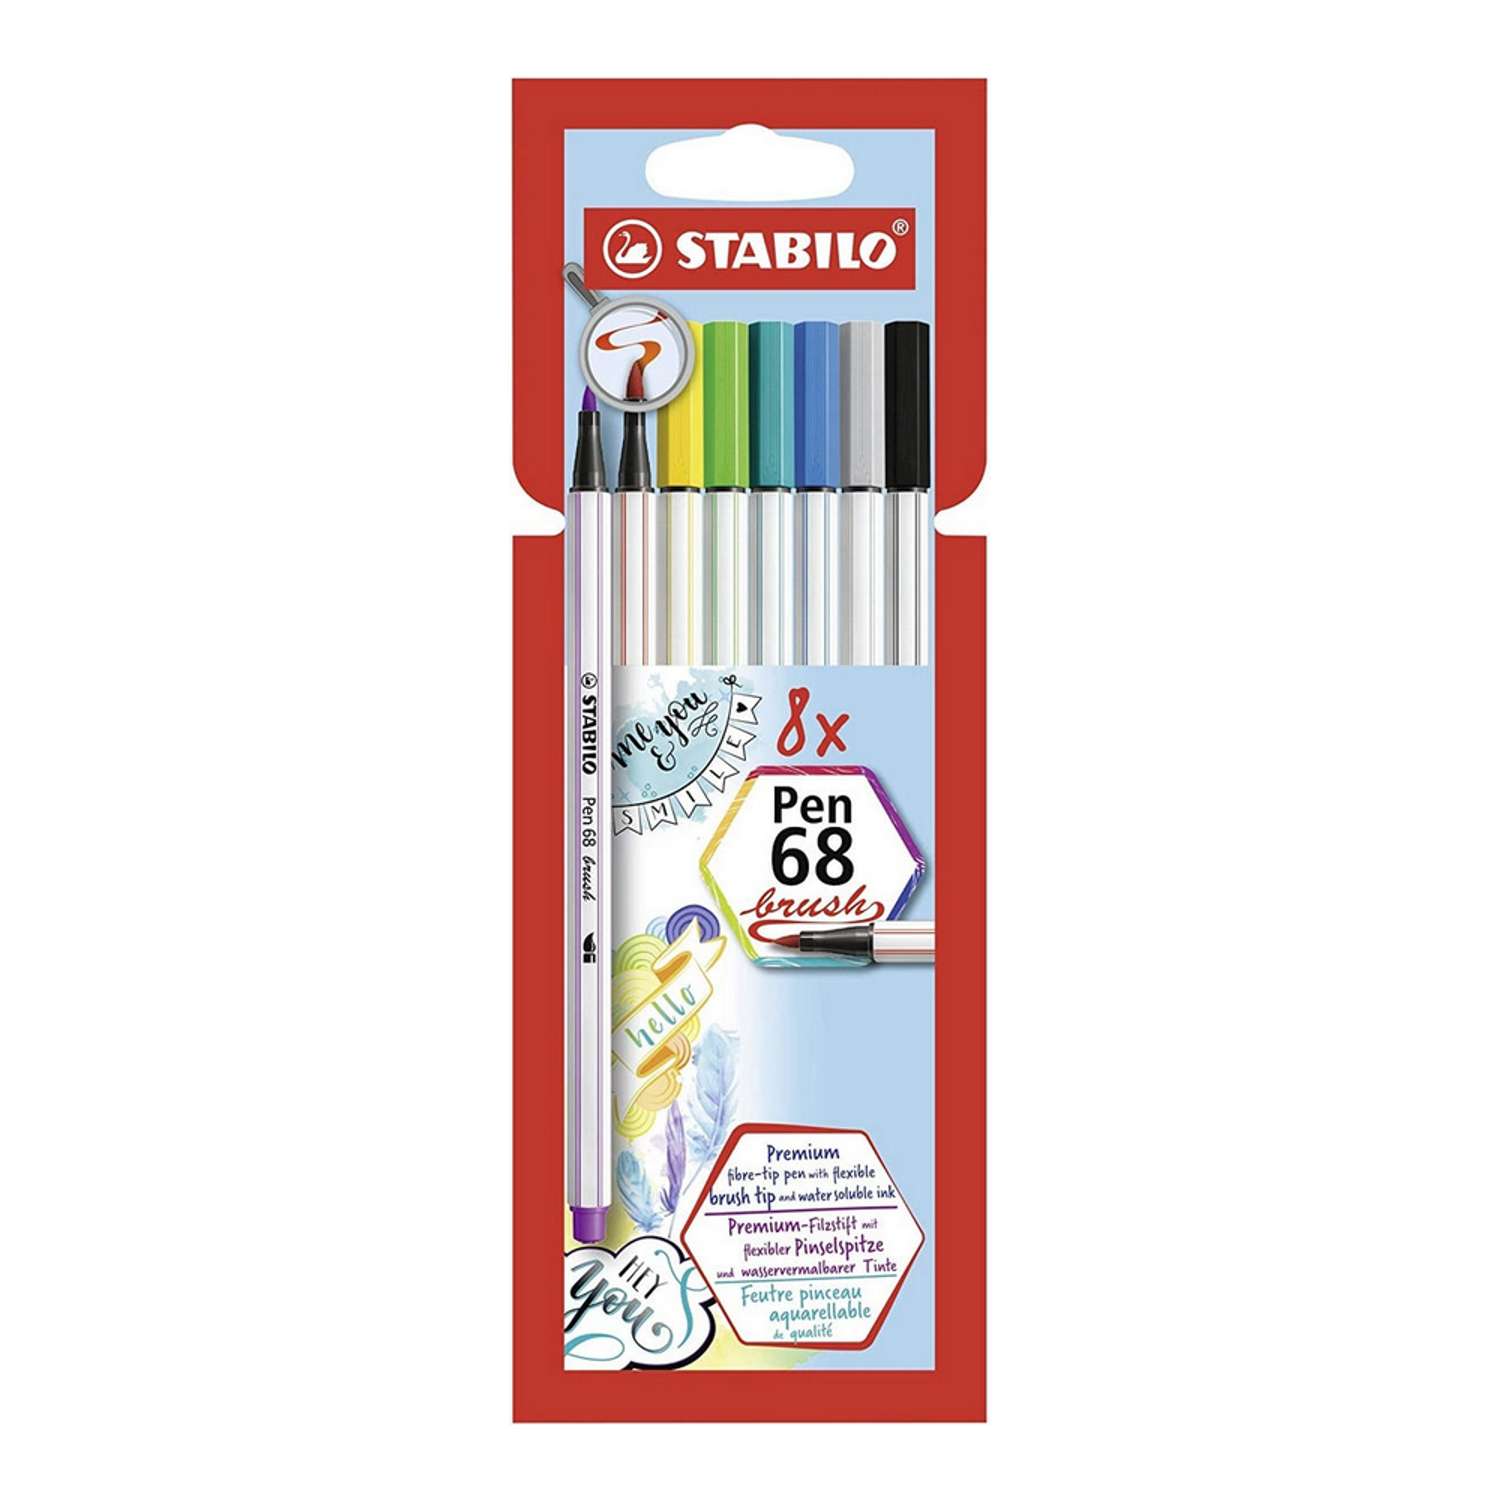 Фломастеры-кисть STABILO Pen 68 brush 8 цветов 568/08-21 - фото 1